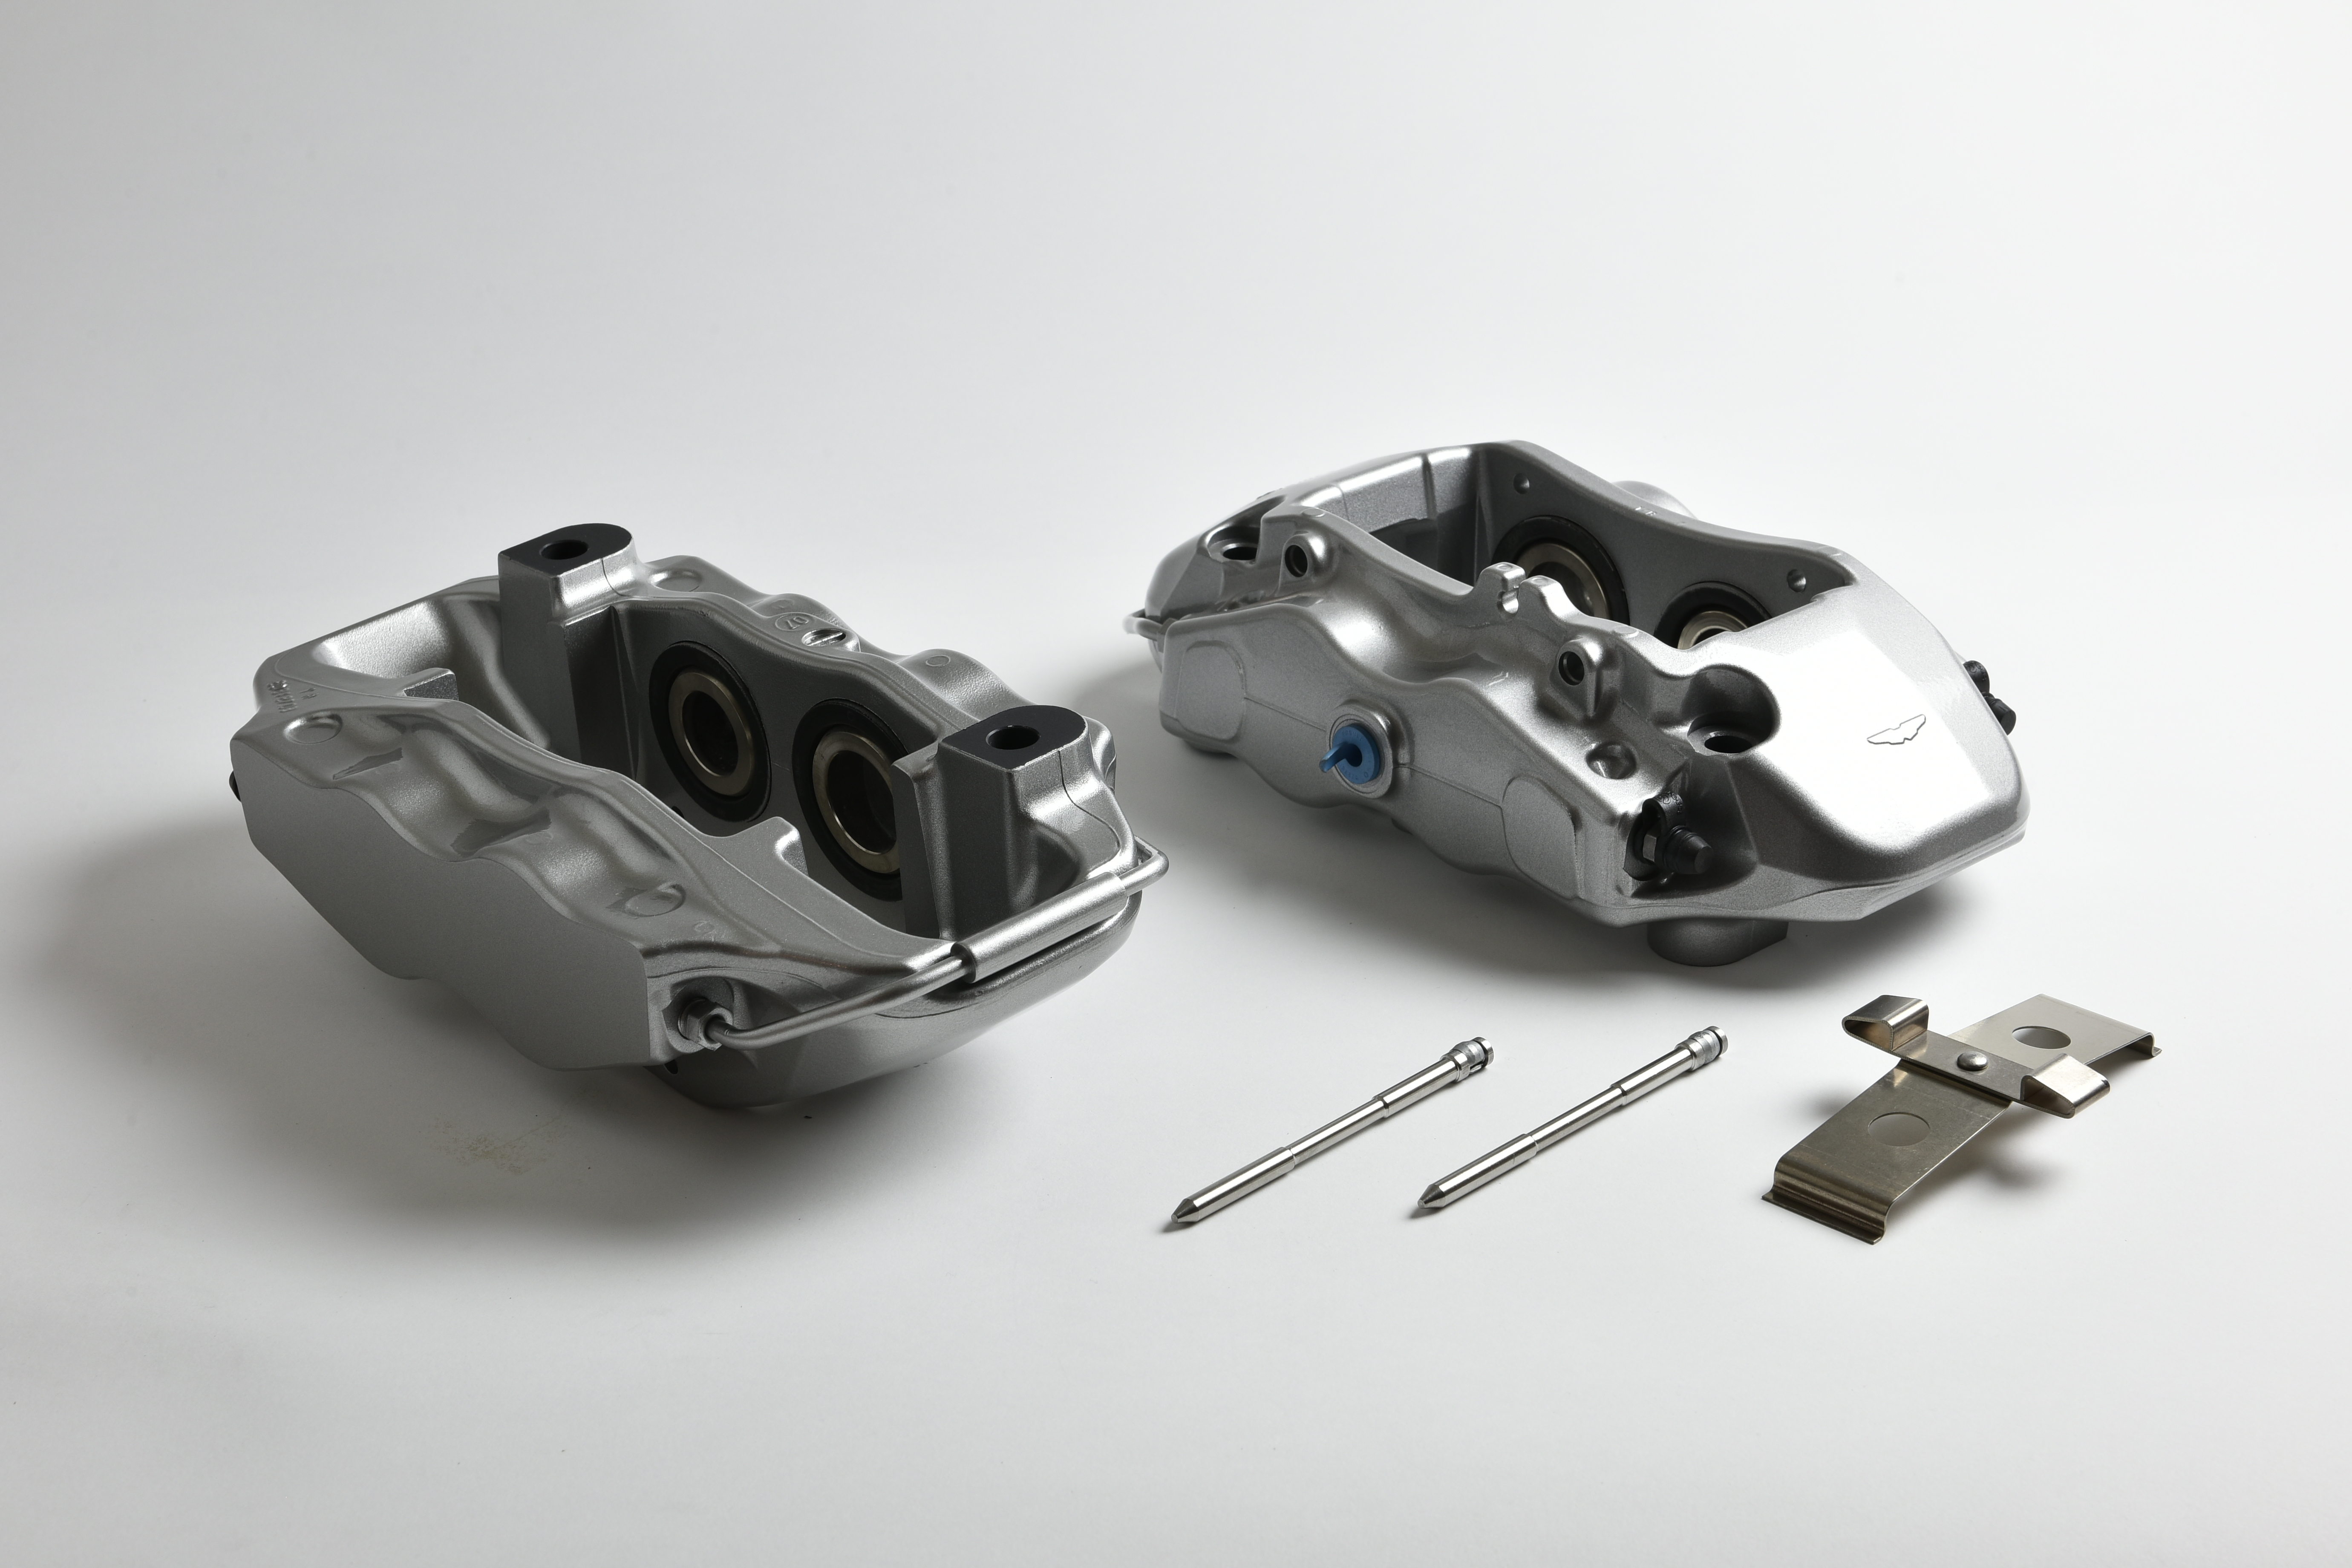 Vagbremtechnic 6 Vagbremtechnic Releases Details Of Brembo Brake Kit For Various VW Group Models